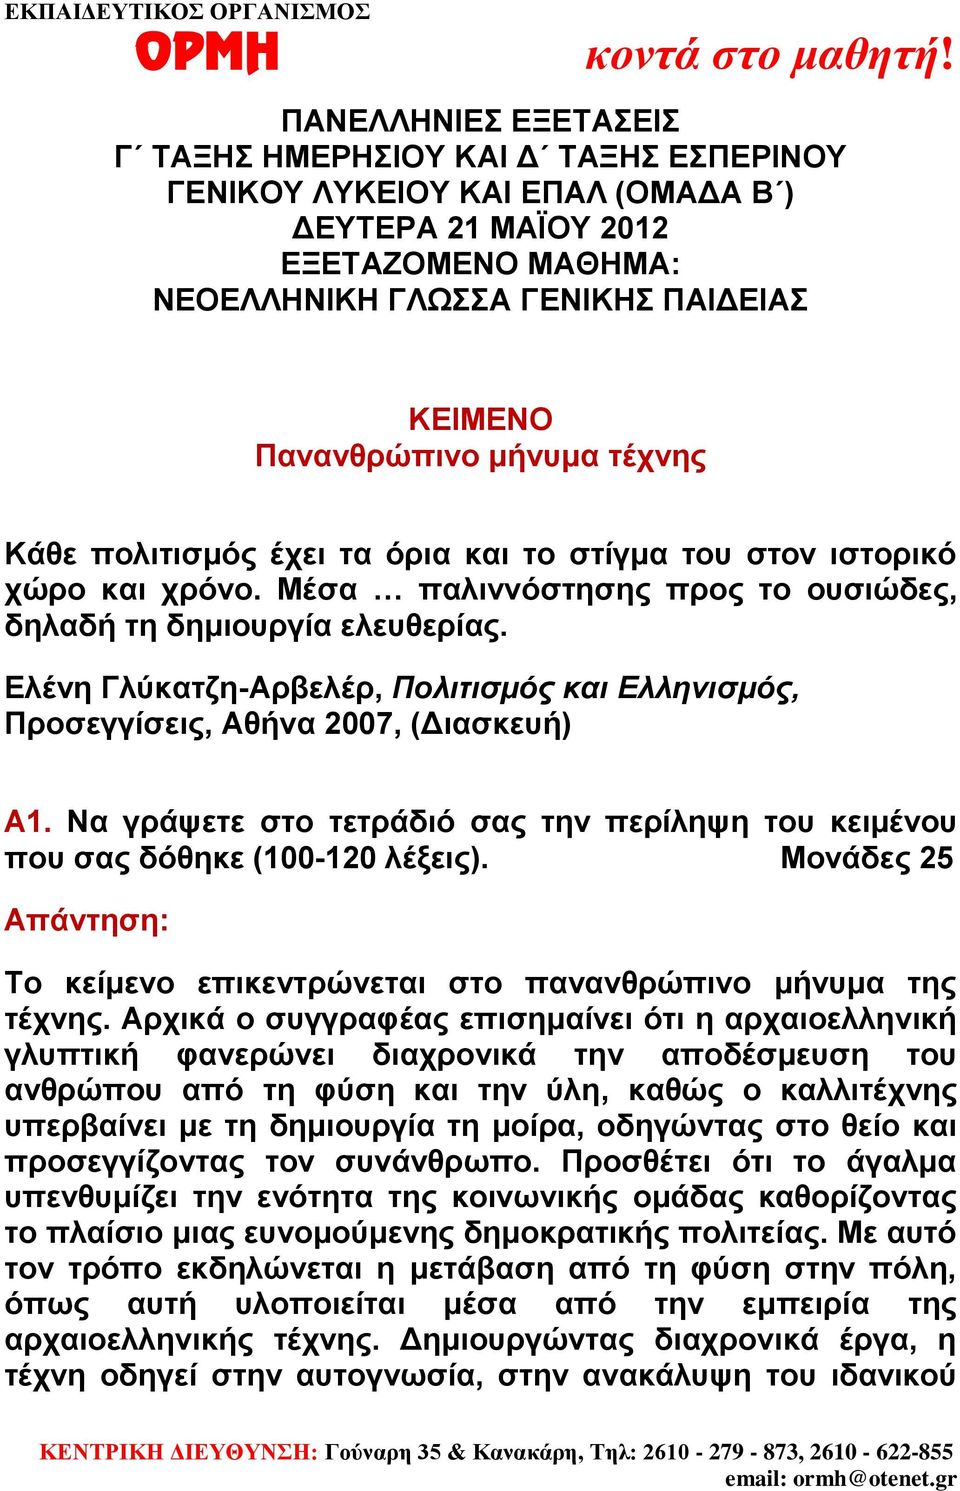 Ελένη Γλύκατζη-Αρβελέρ, Πολιτισμός και Ελληνισμός, Προσεγγίσεις, Αθήνα 2007, (Διασκευή) A1. Να γράψετε στο τετράδιό σας την περίληψη του κειμένου που σας δόθηκε (100-120 λέξεις).